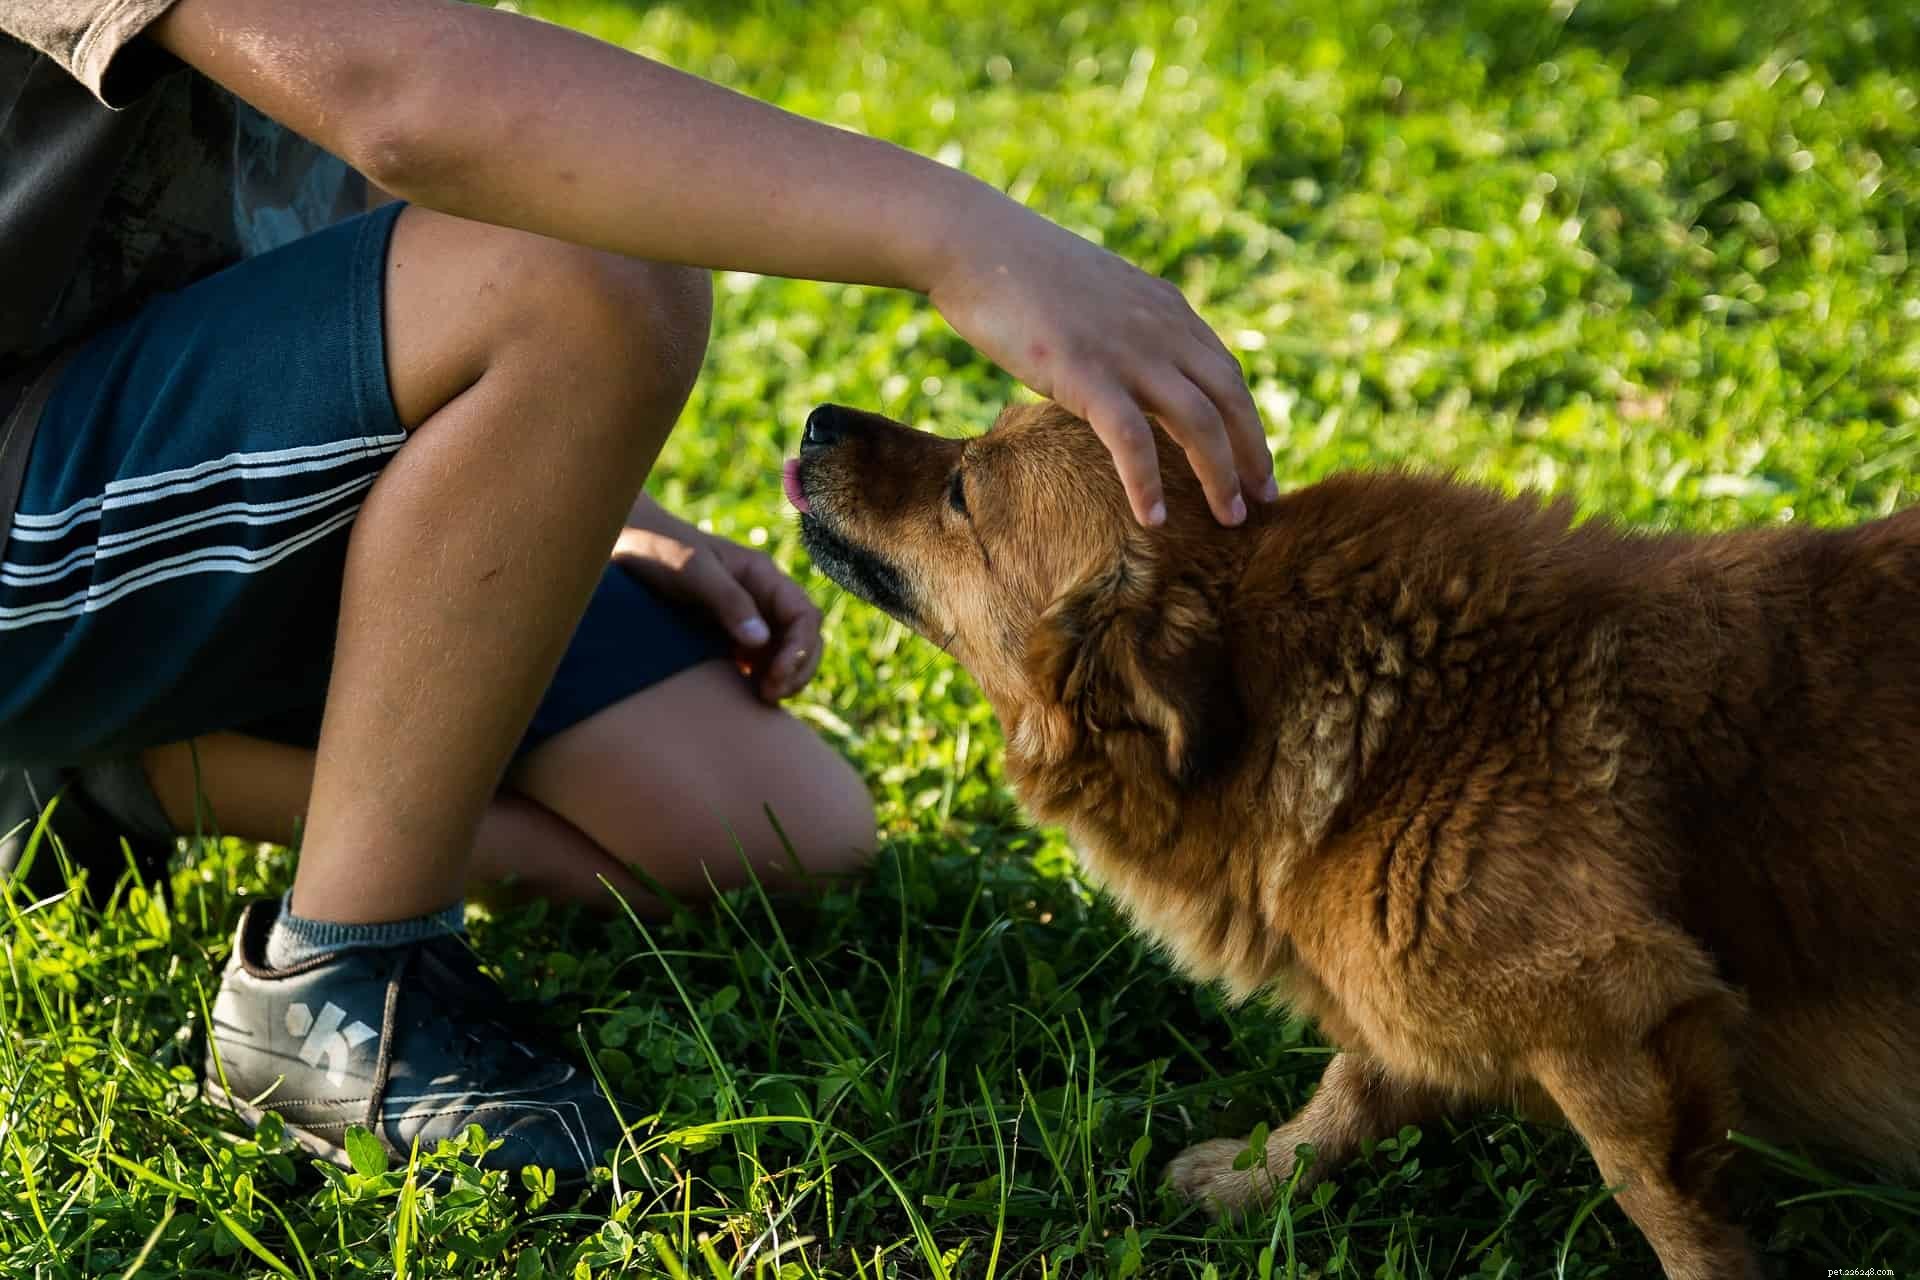 개가 사라진 후 슬픔에 대처하기:자녀와 대화하기